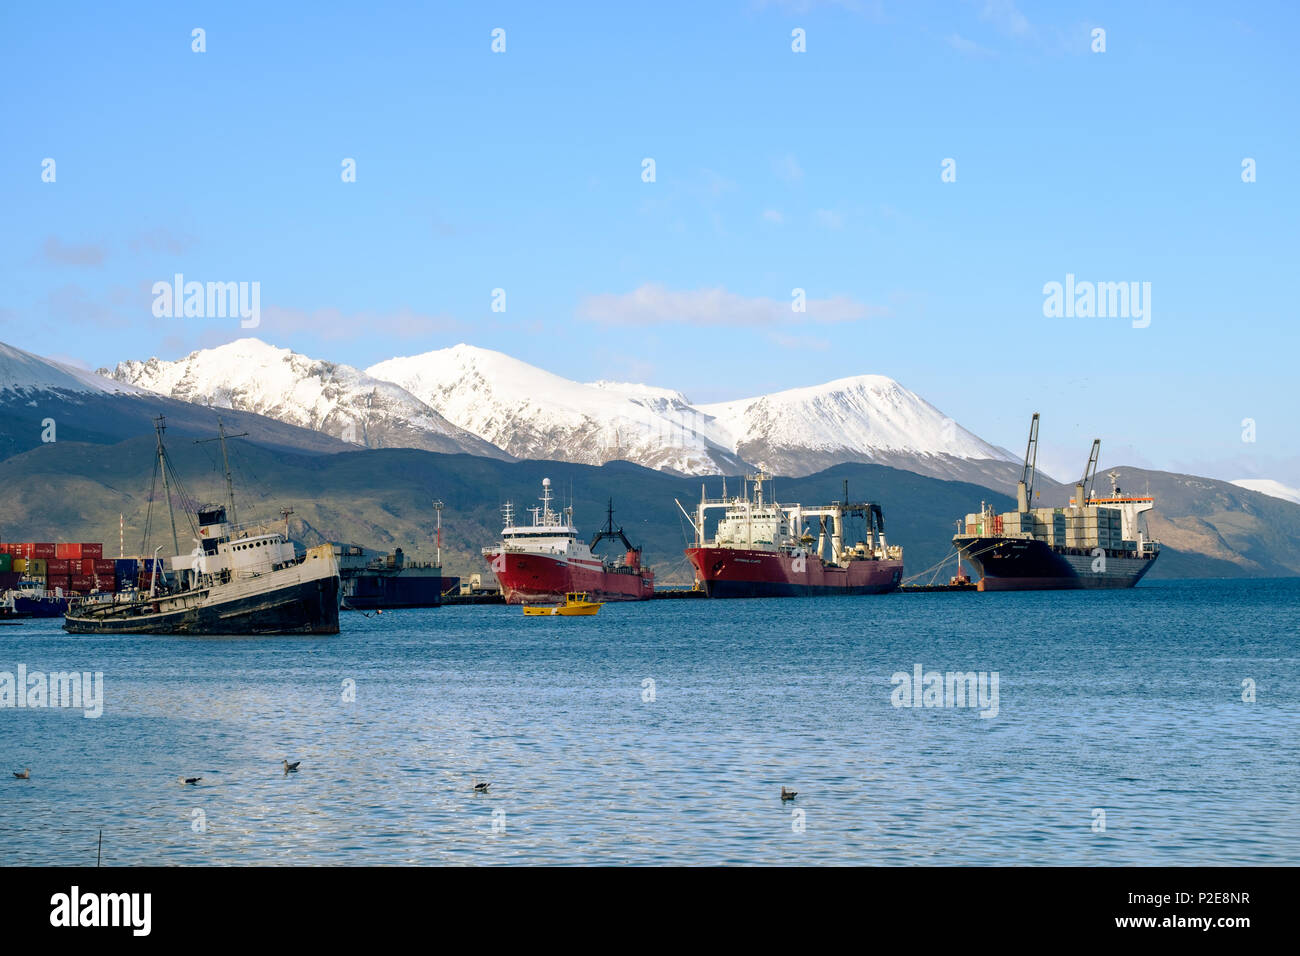 Die Saint-Christopher, einem alten Boot, liegt in der Bucht von Ushuaia. Hinter dem Werden ein paar Containerschiffe, die einige kleine Hafen Aktivität anzeigen. Stockfoto